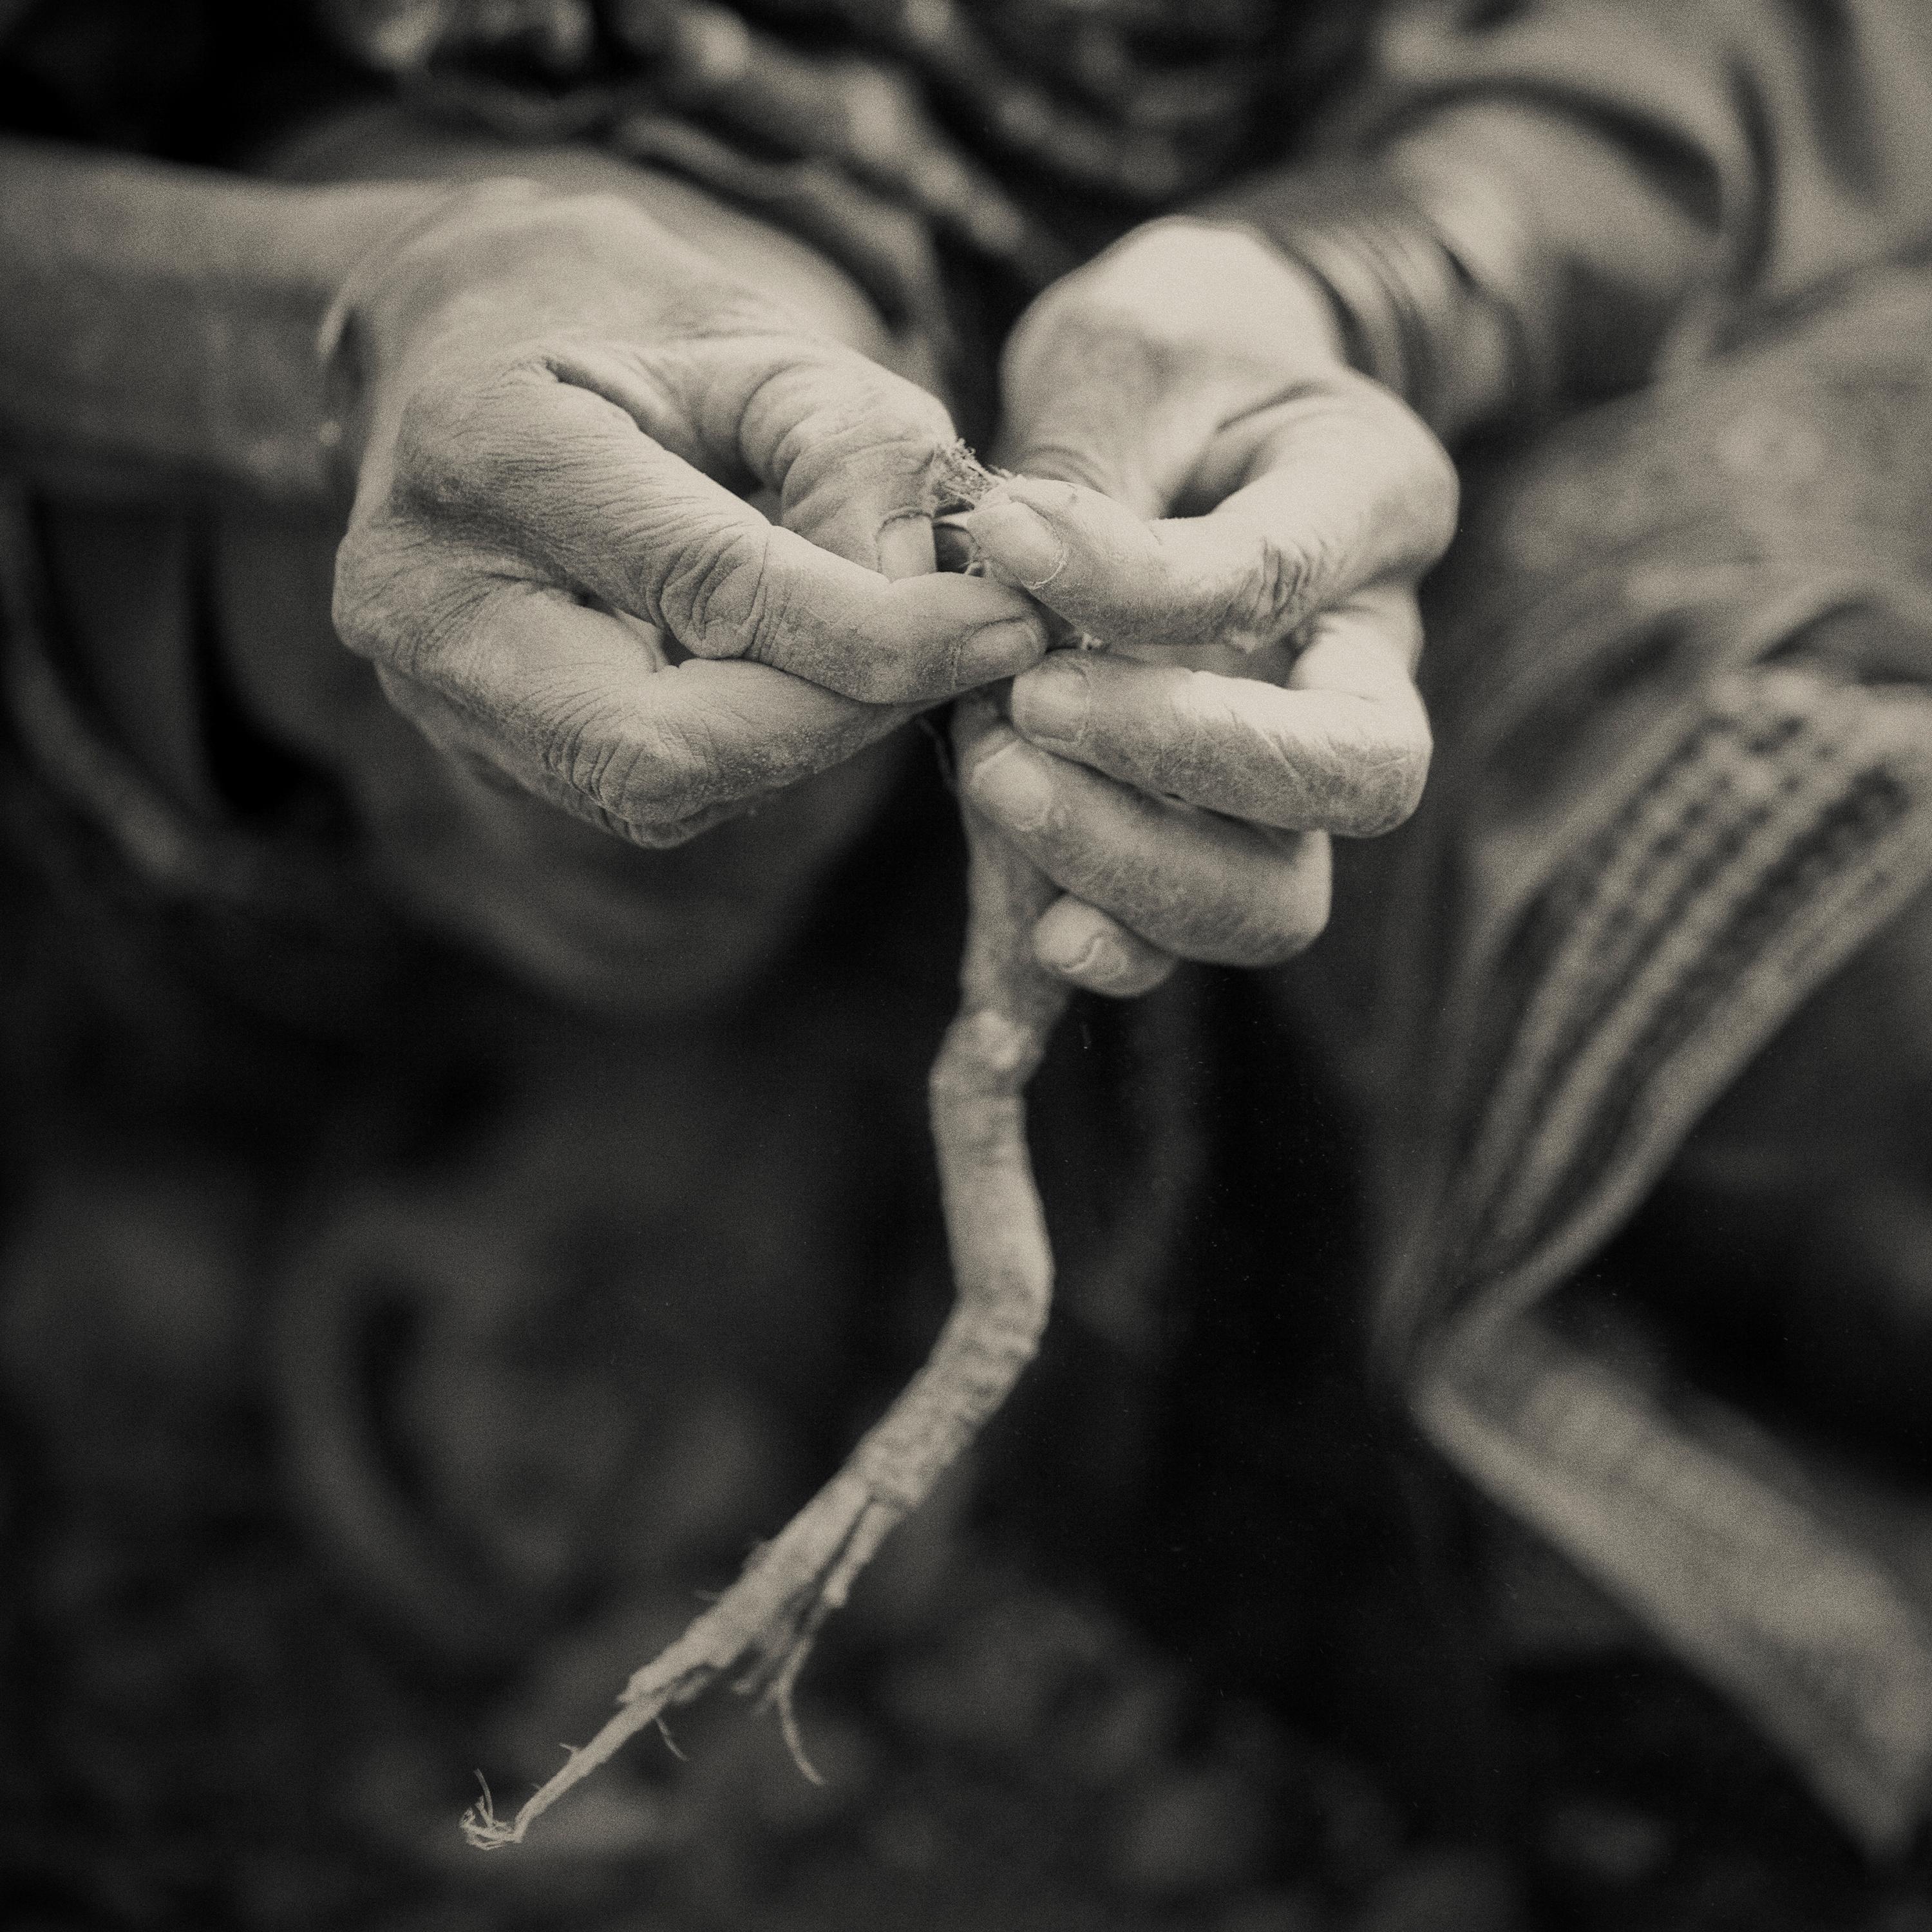 'GATHERING HANDS, ' Hadzabe Tribe, Tanzania, Black and White Photo, Nicol Ragland 1